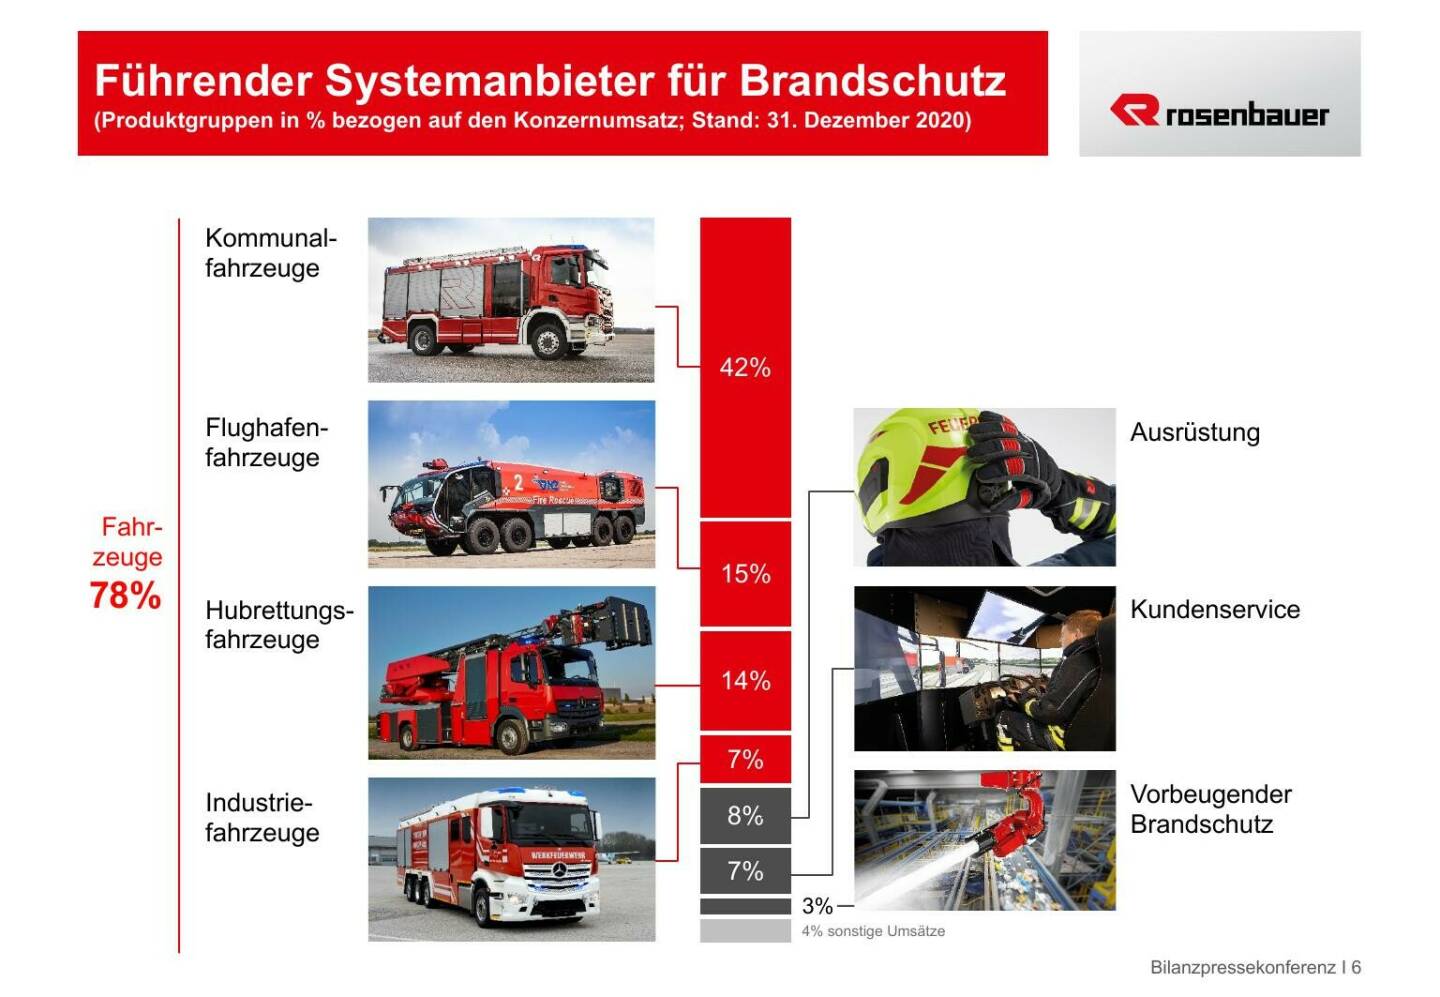 Rosenbauer - Führender Systemanbieter für Brandschutz 